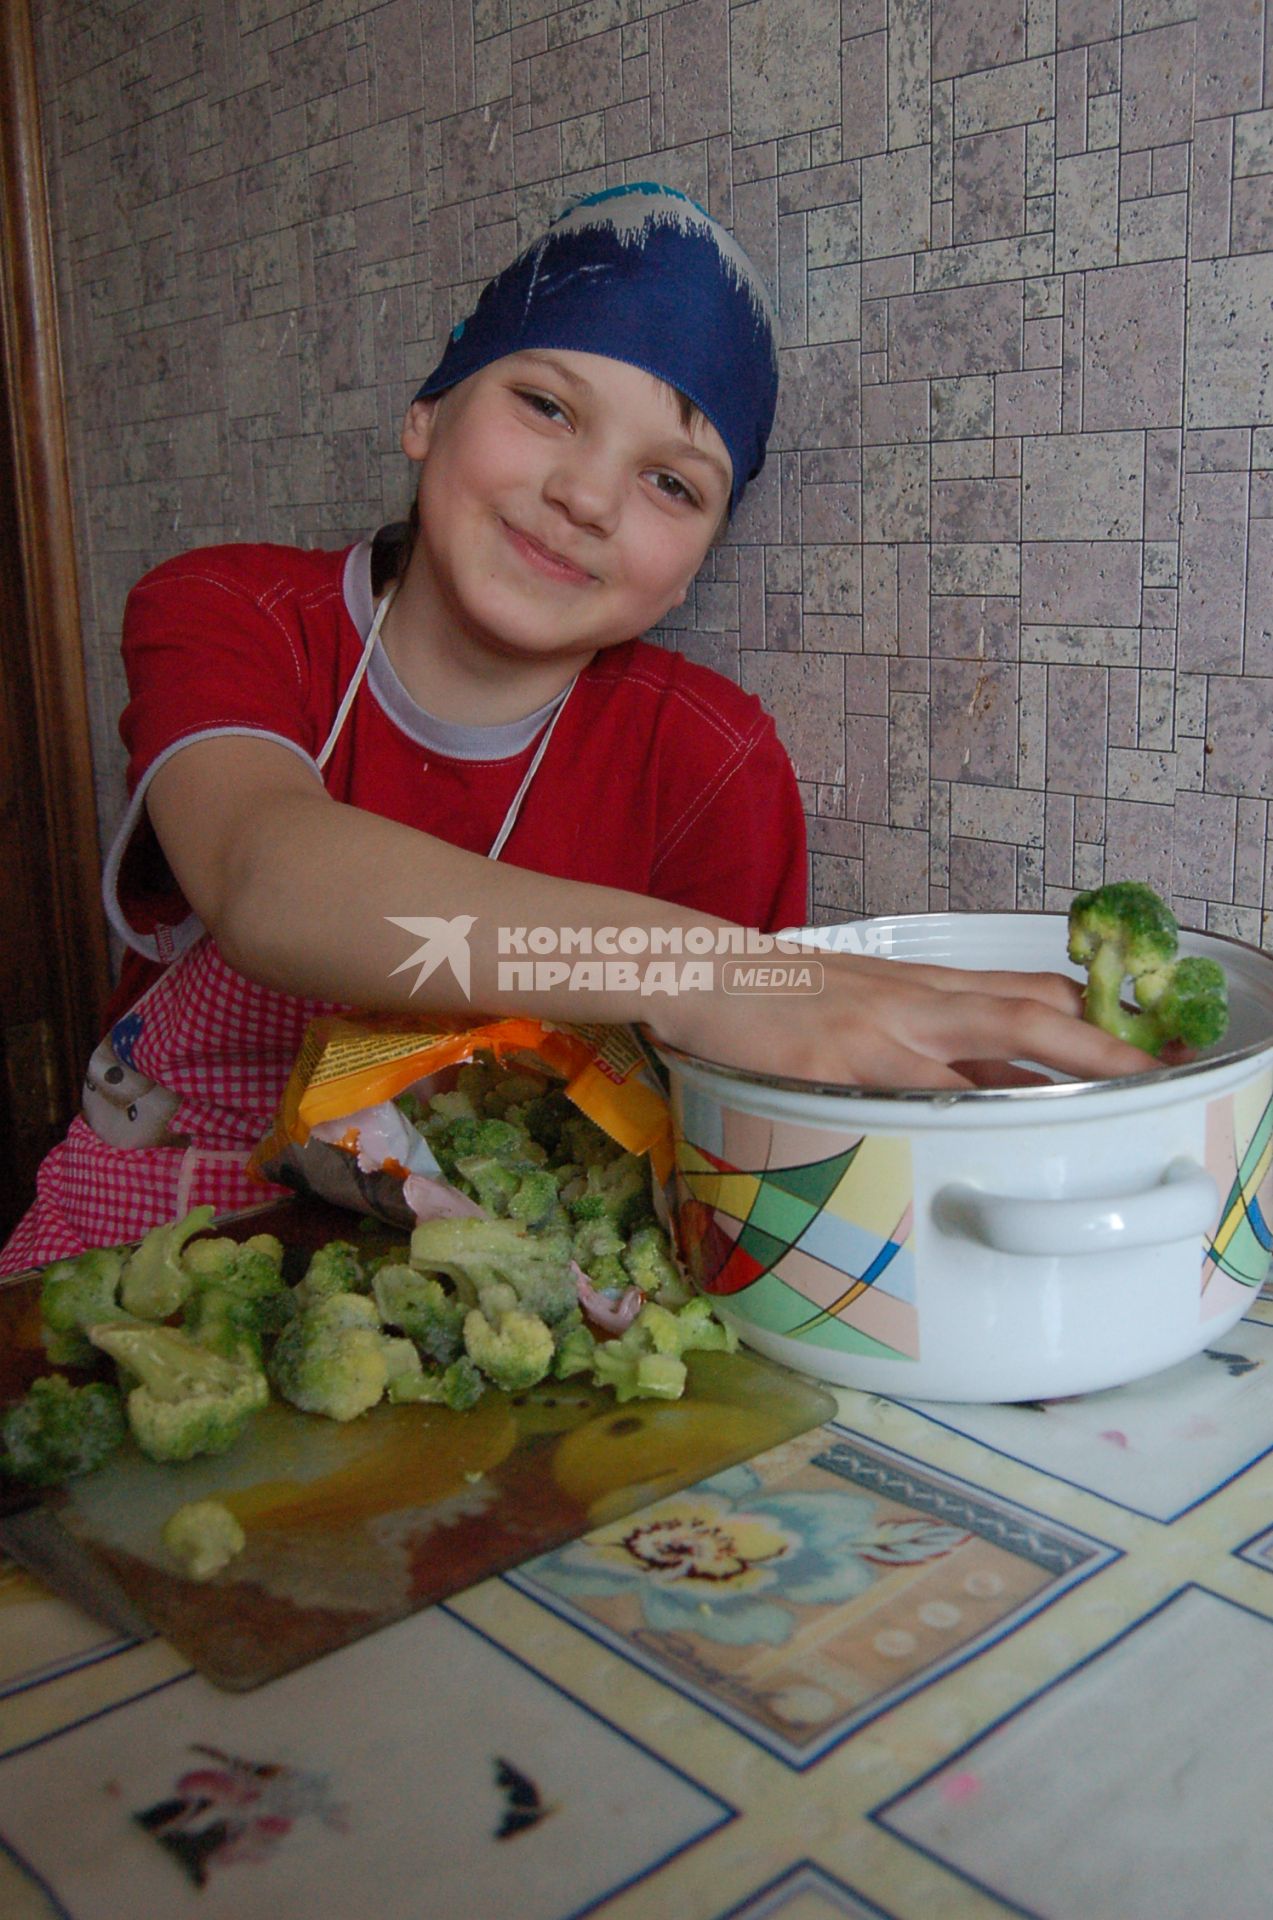 Мальчик на кухне с замороженной капустой брокколи.